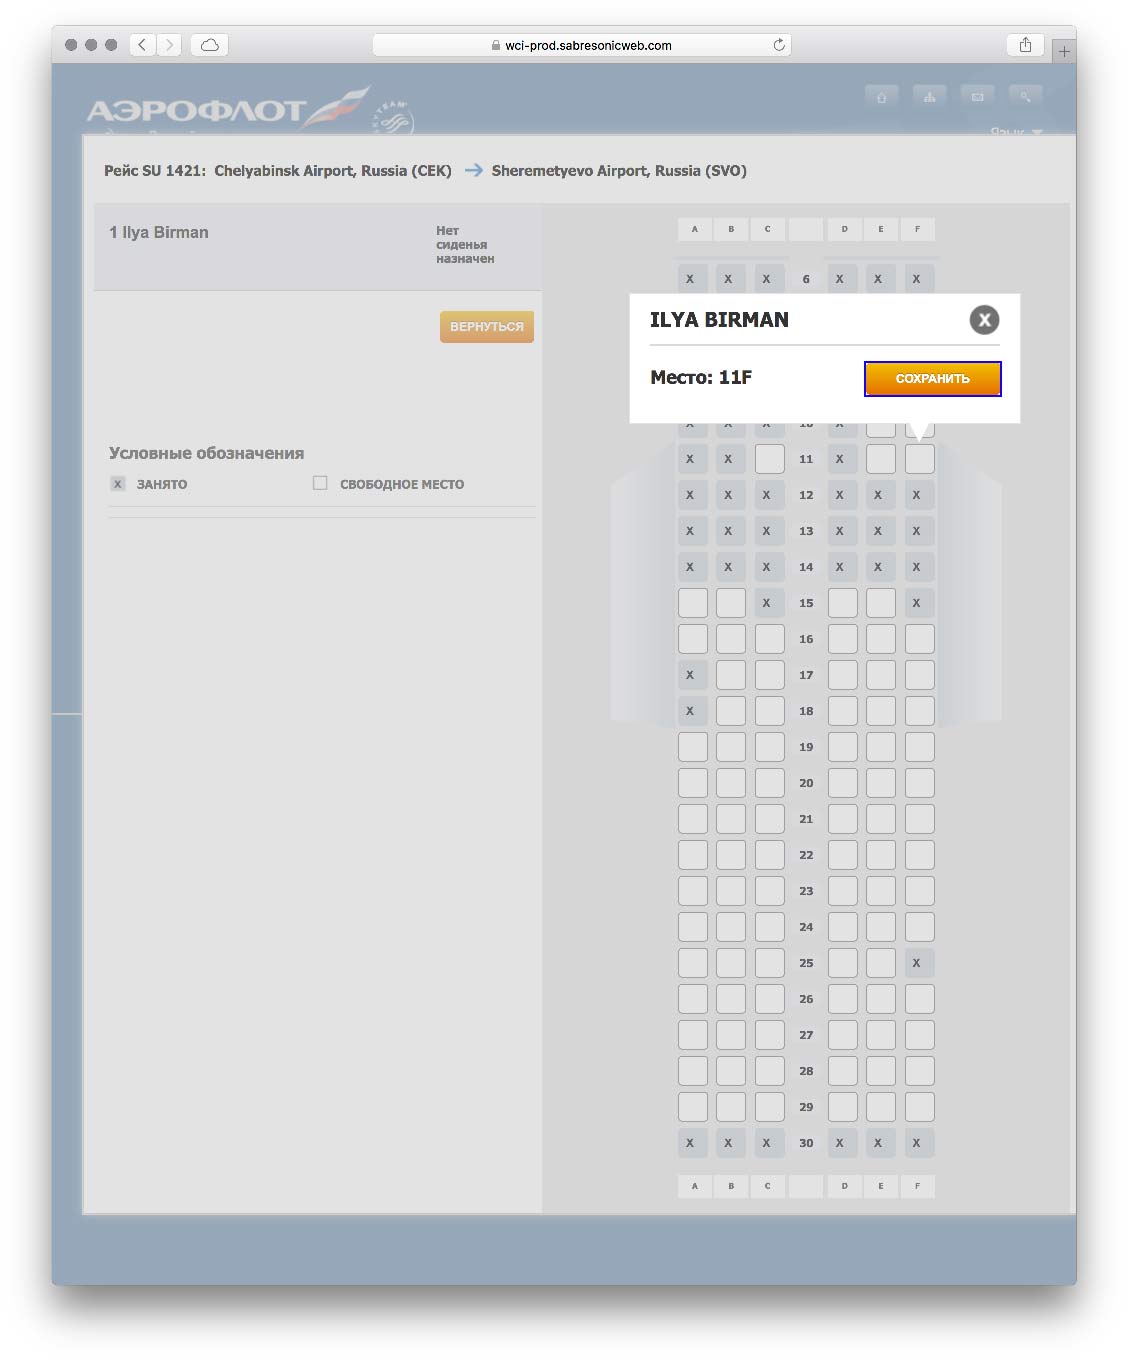 Как забронировать место в самолете по электронному билету